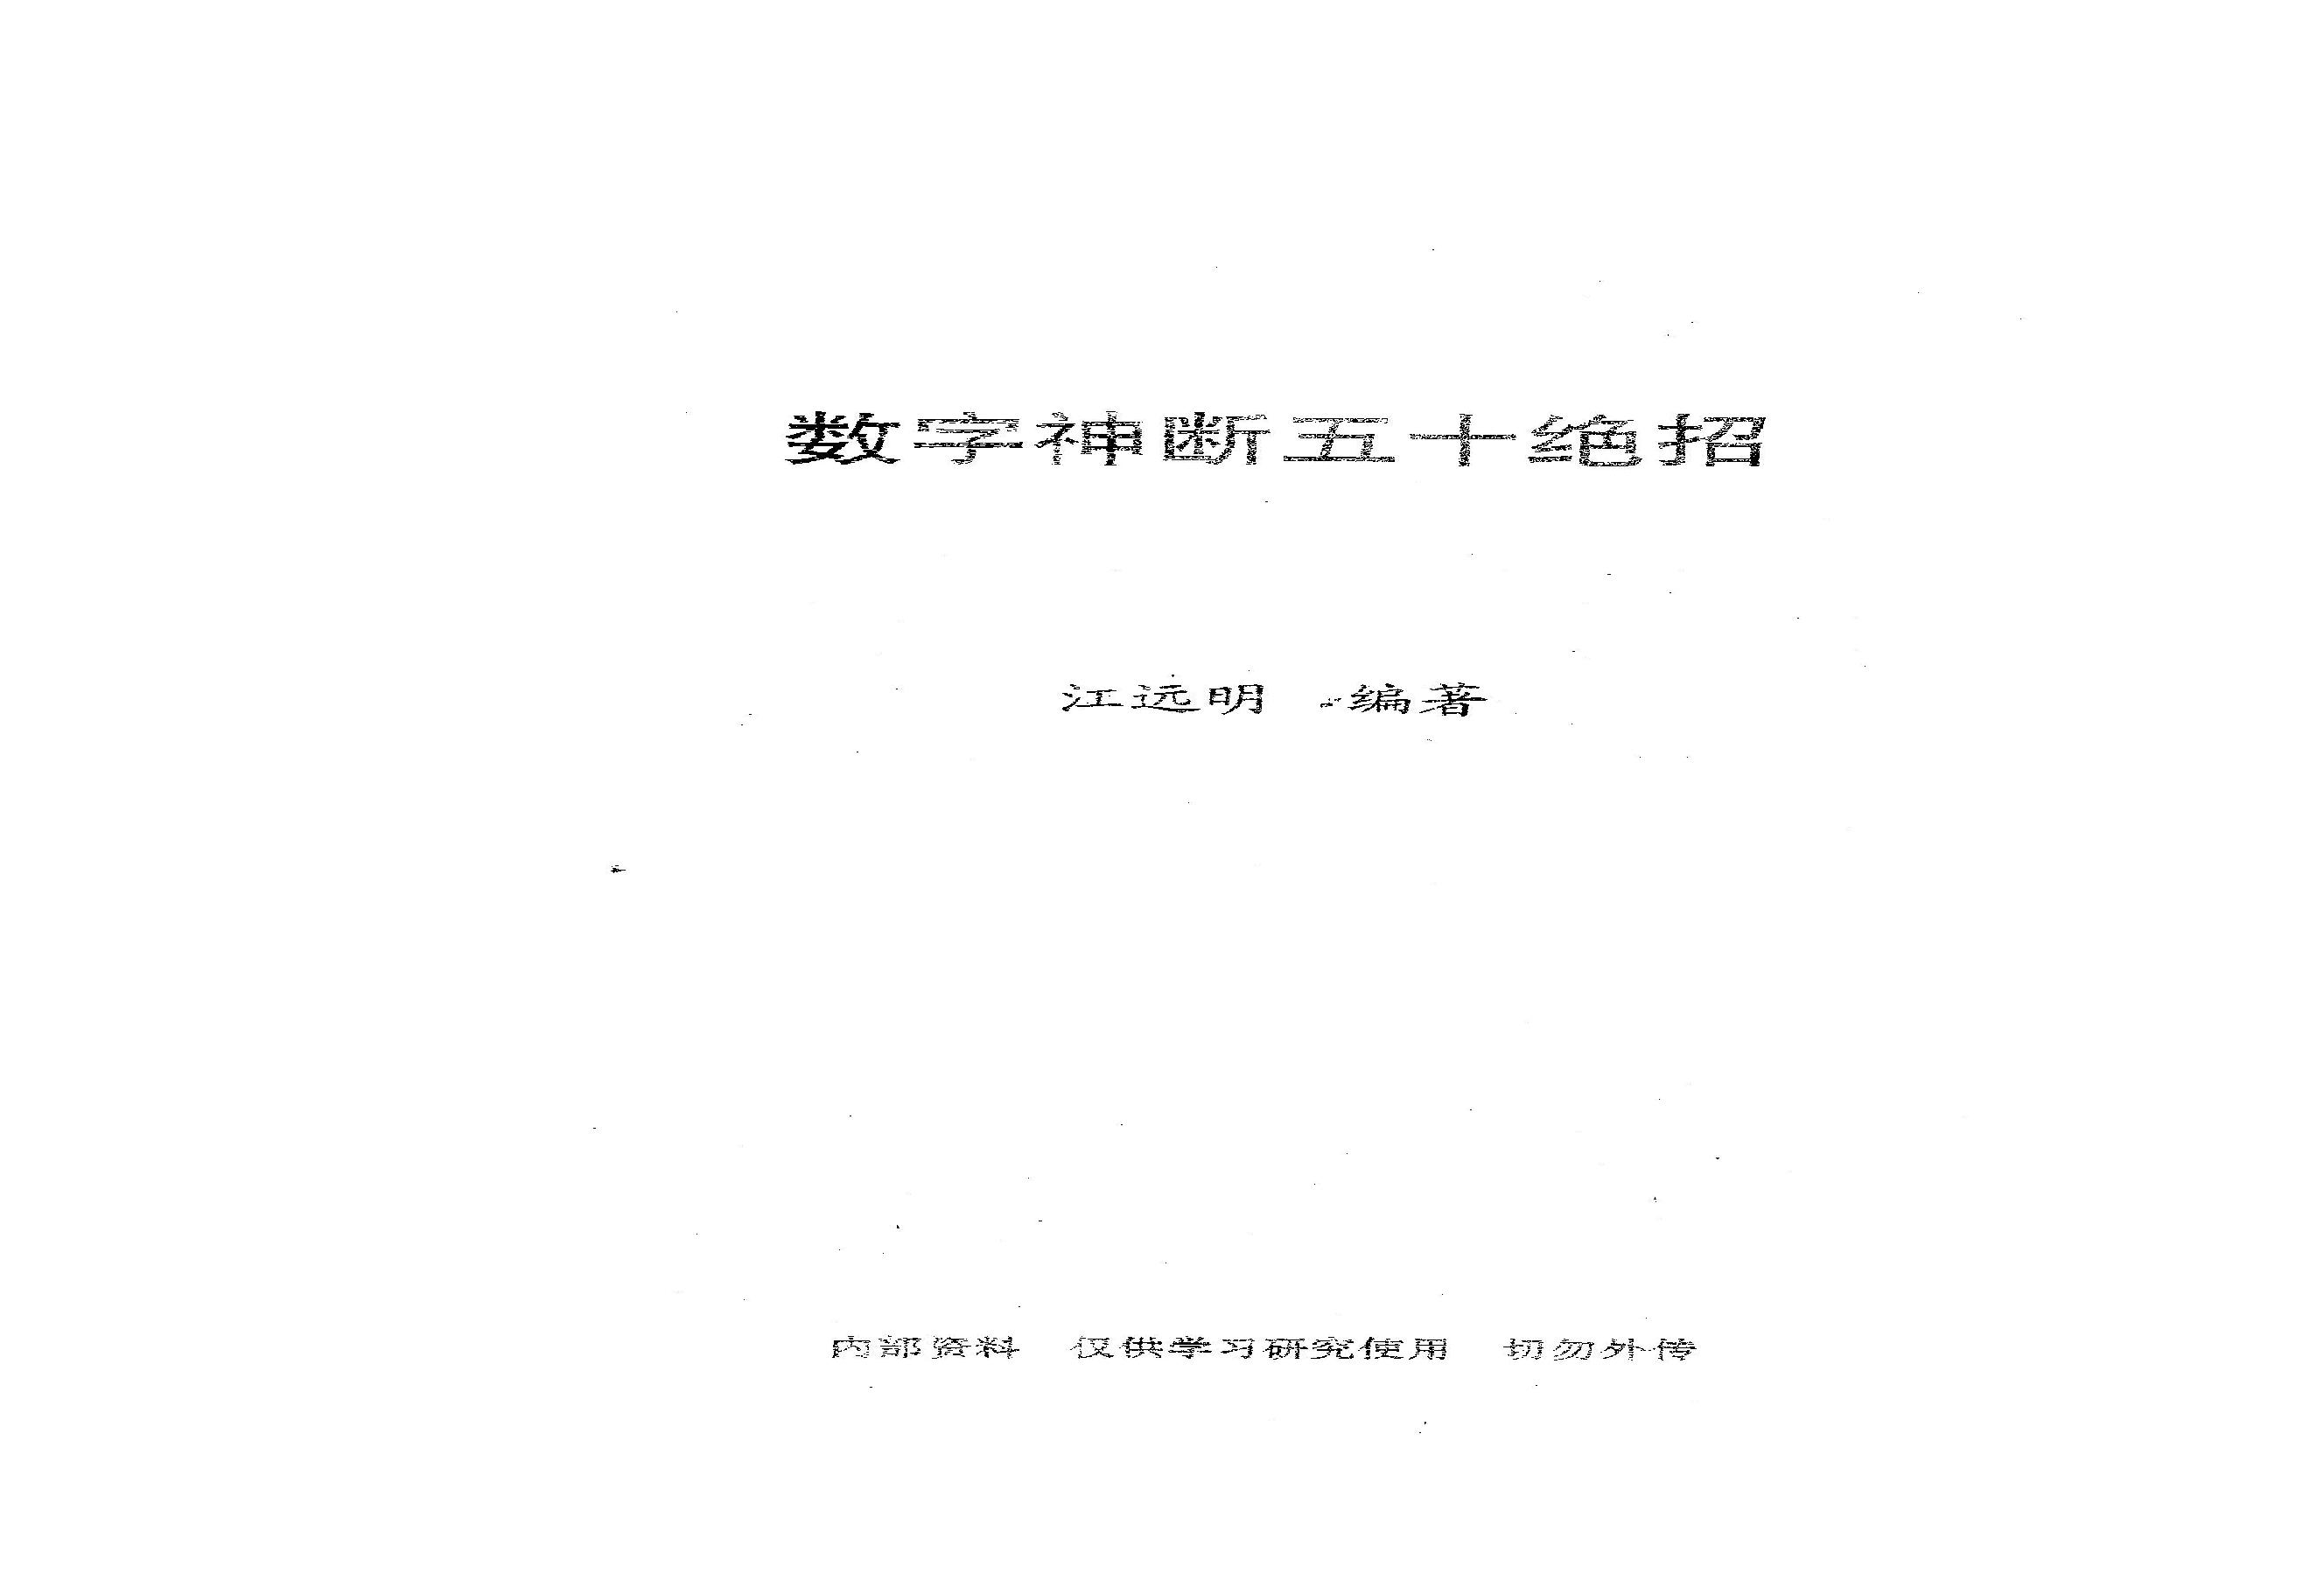 275-数字神断五十绝招.pdf(34.8MB_27页)